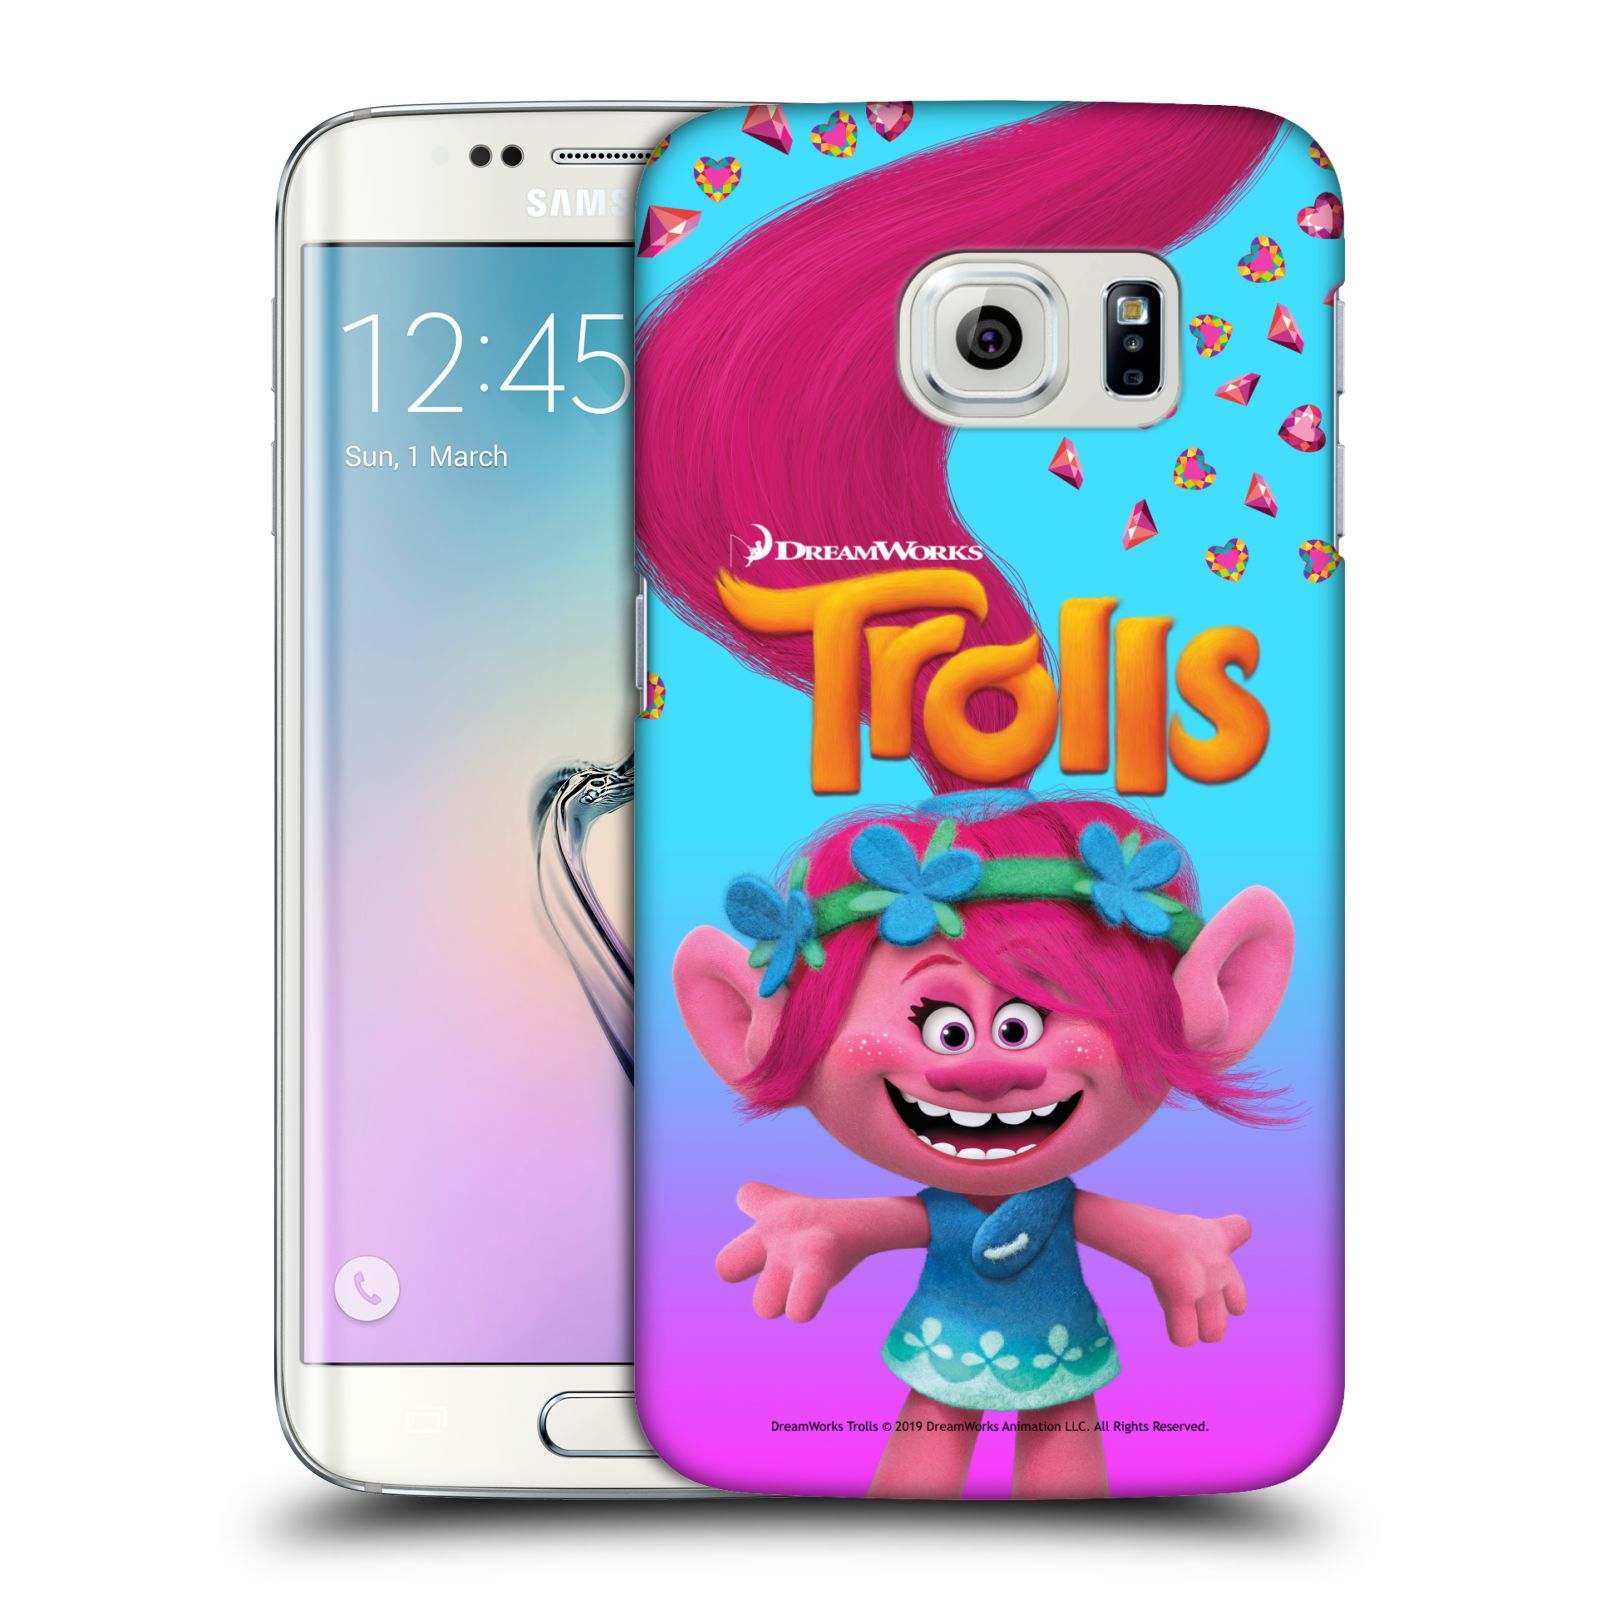 Pouzdro na mobil Samsung Galaxy S6 EDGE - HEAD CASE - Pohádka - Trollové skřítek holčička Poppy